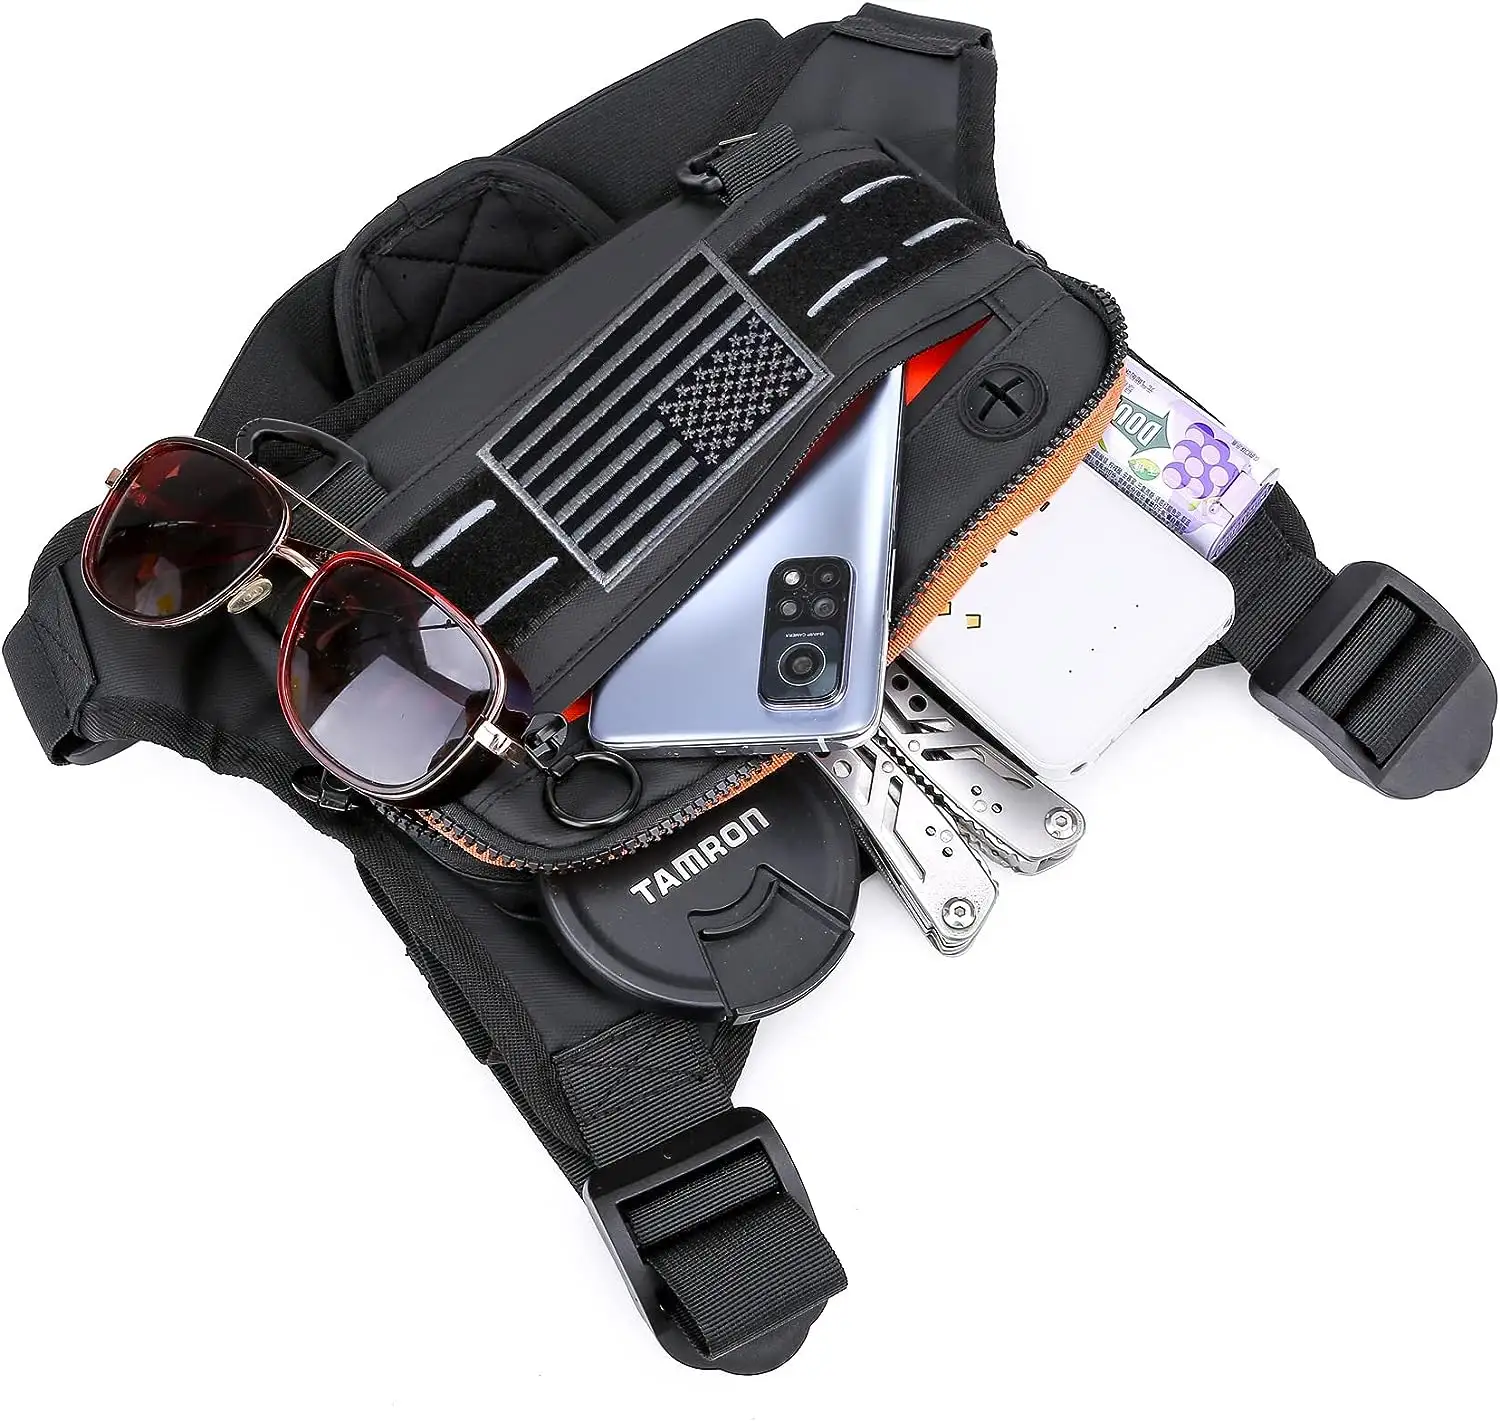 Sports Peito Bag For Men Resistente à água Leve Frente Correndo Vest Bag Com Built-In Phone Holder